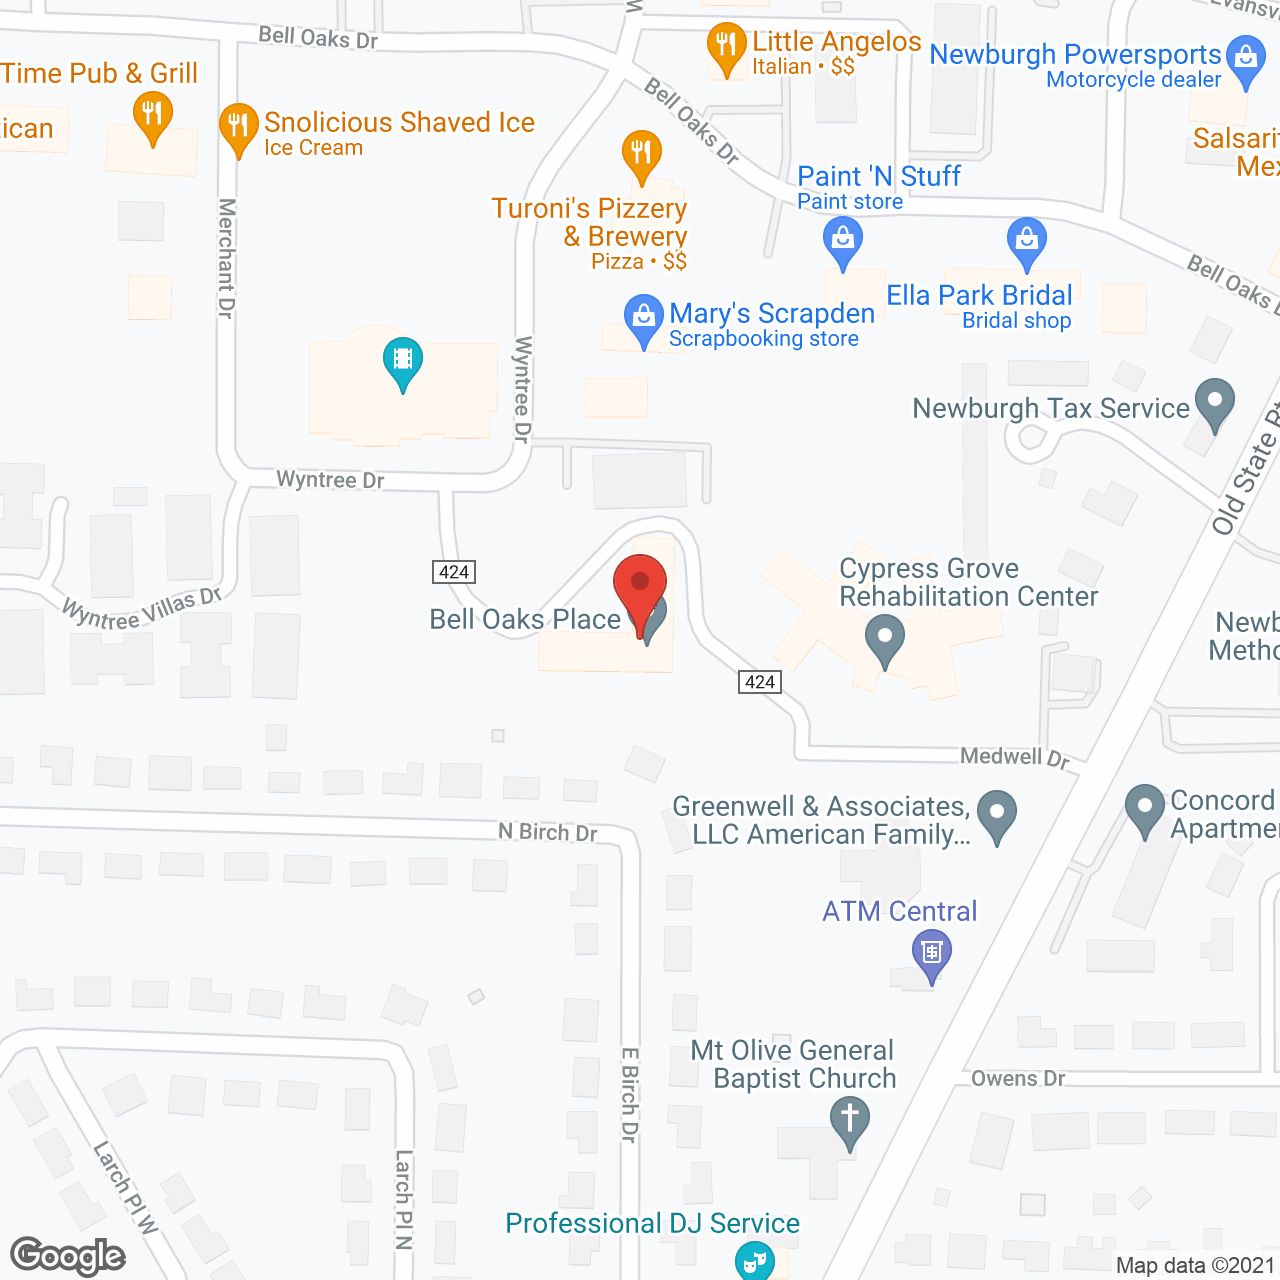 Bell Oaks Place in google map